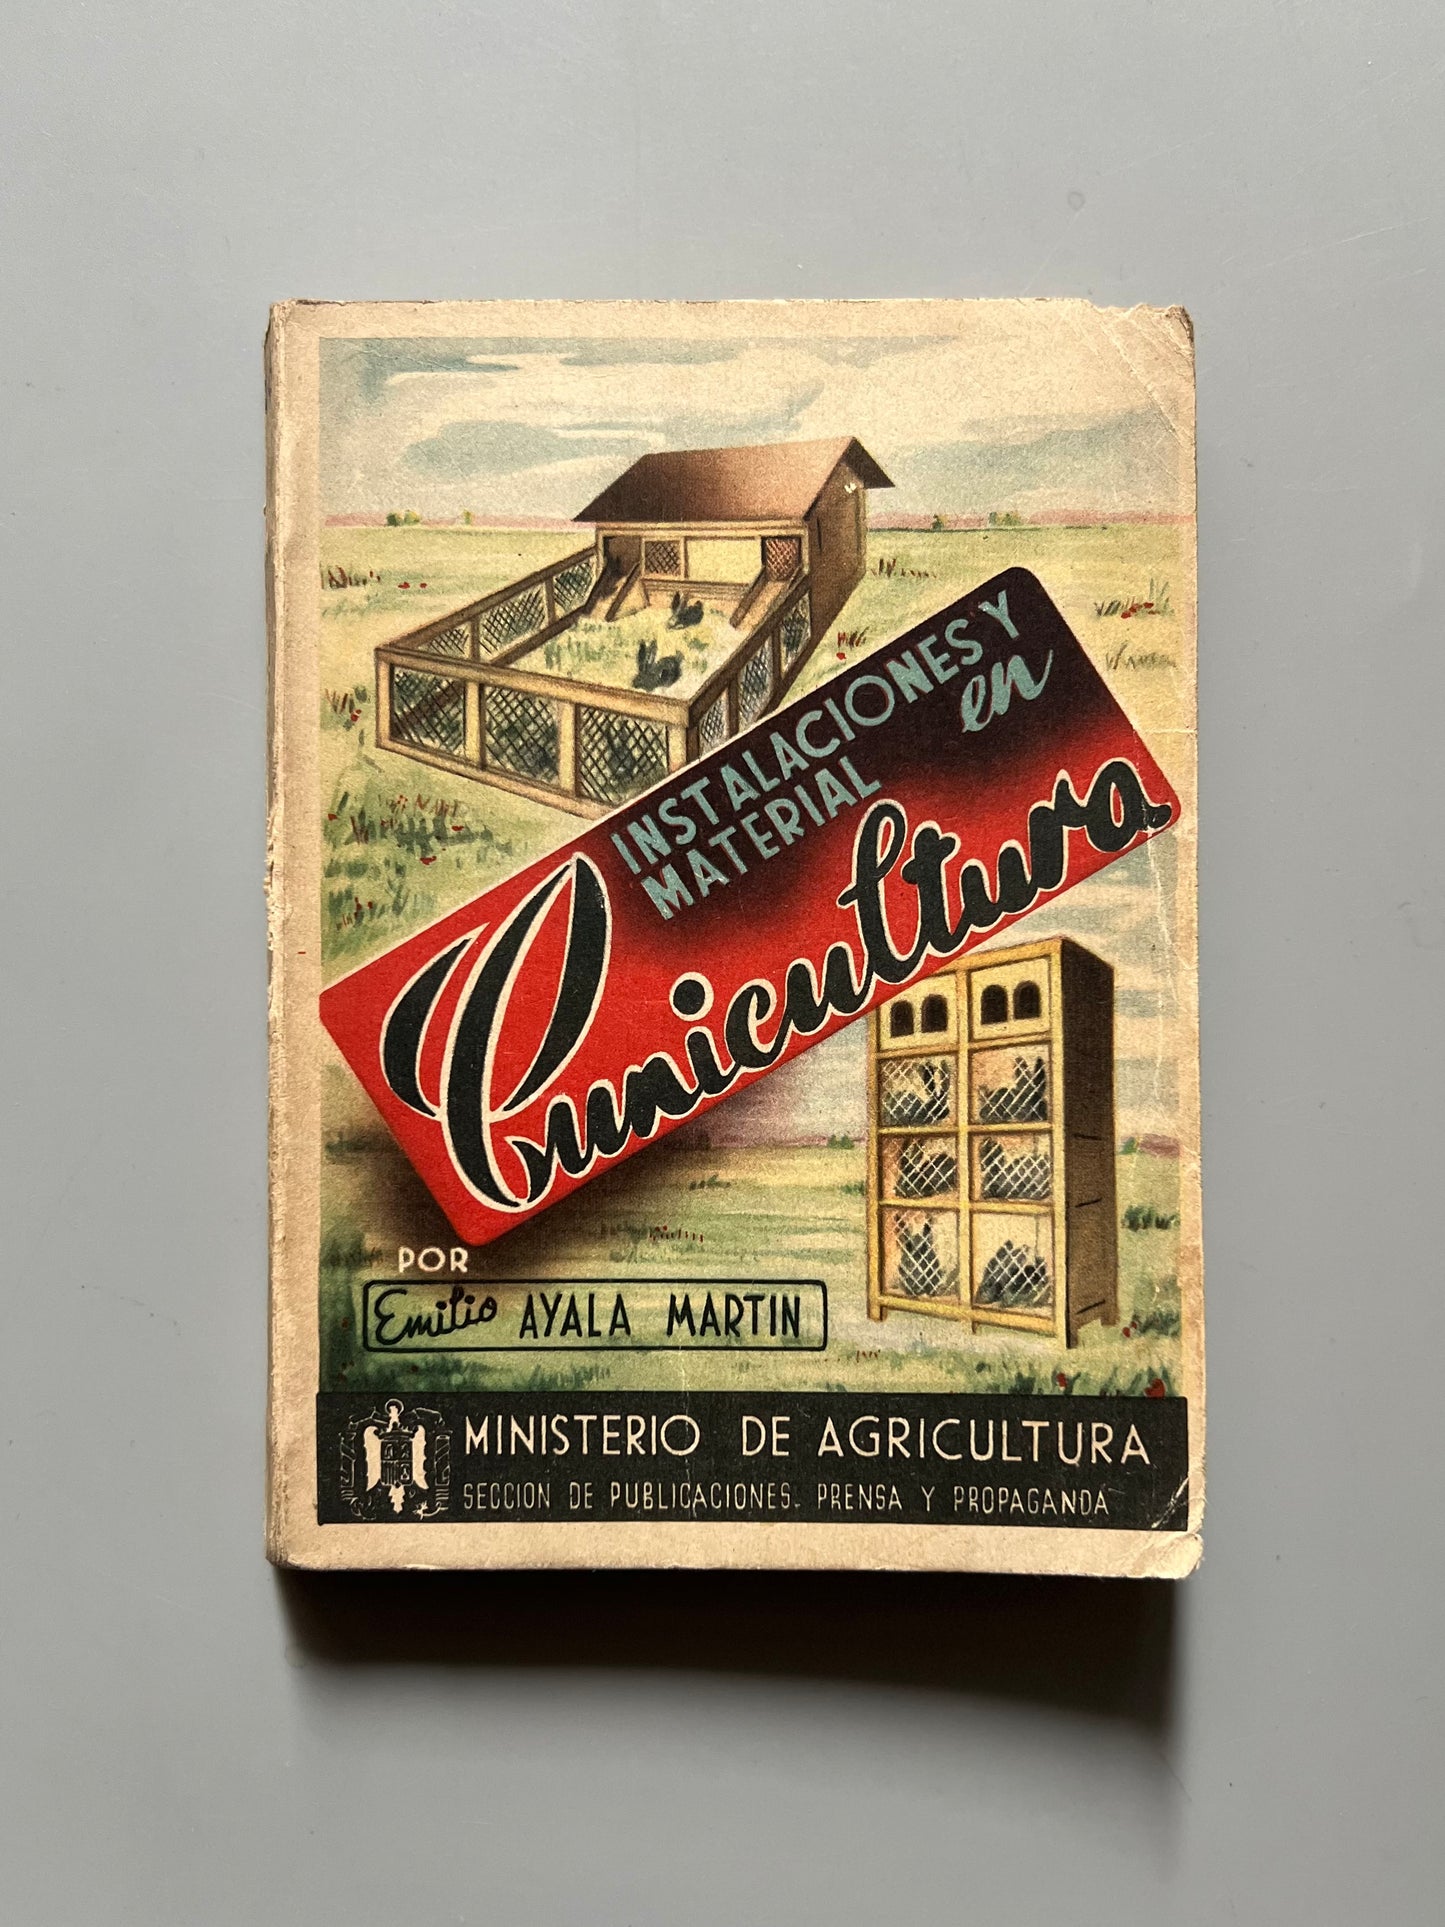 Instalaciones y material en cunicultura, Emilio Ayala Martín - Ministerio de Agricultura, ca. 1948